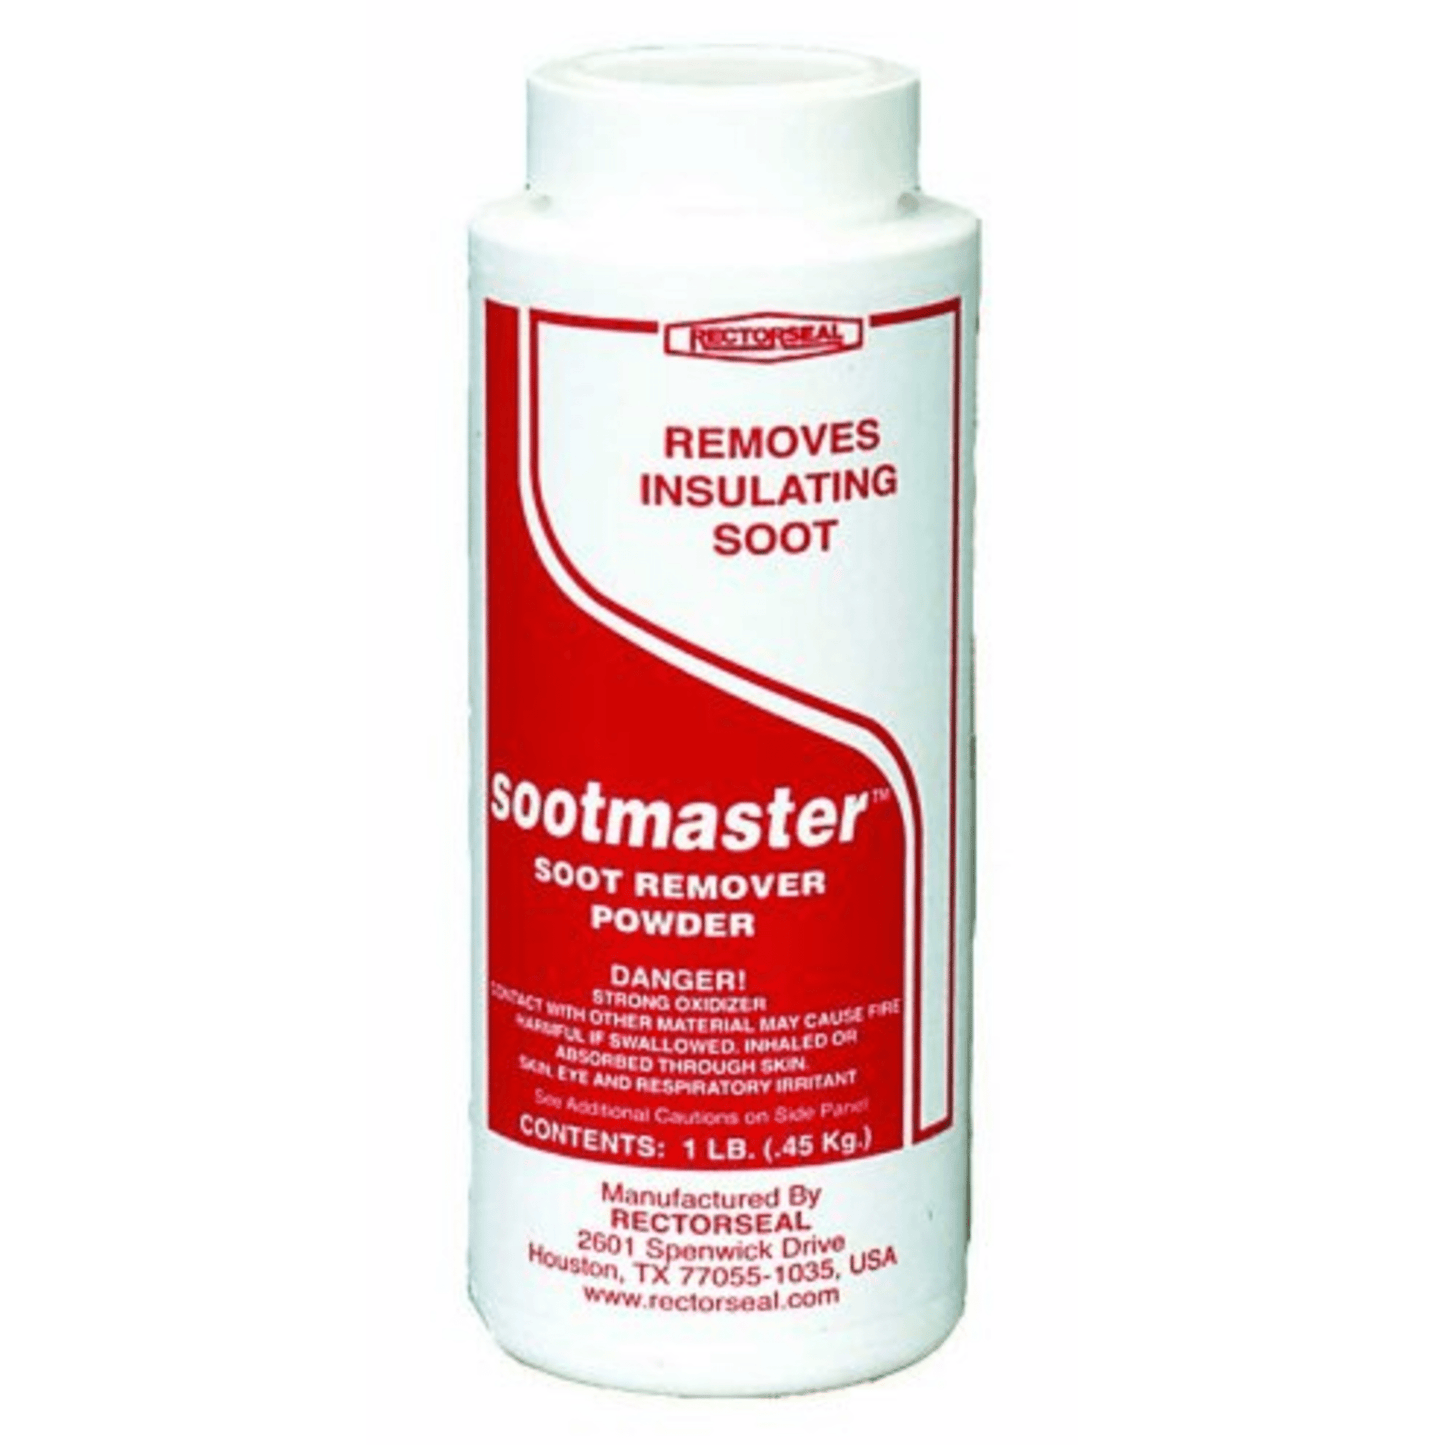 RectorSeal Sootmaster Soot Remover Powder, 1 Lb. - 12PK